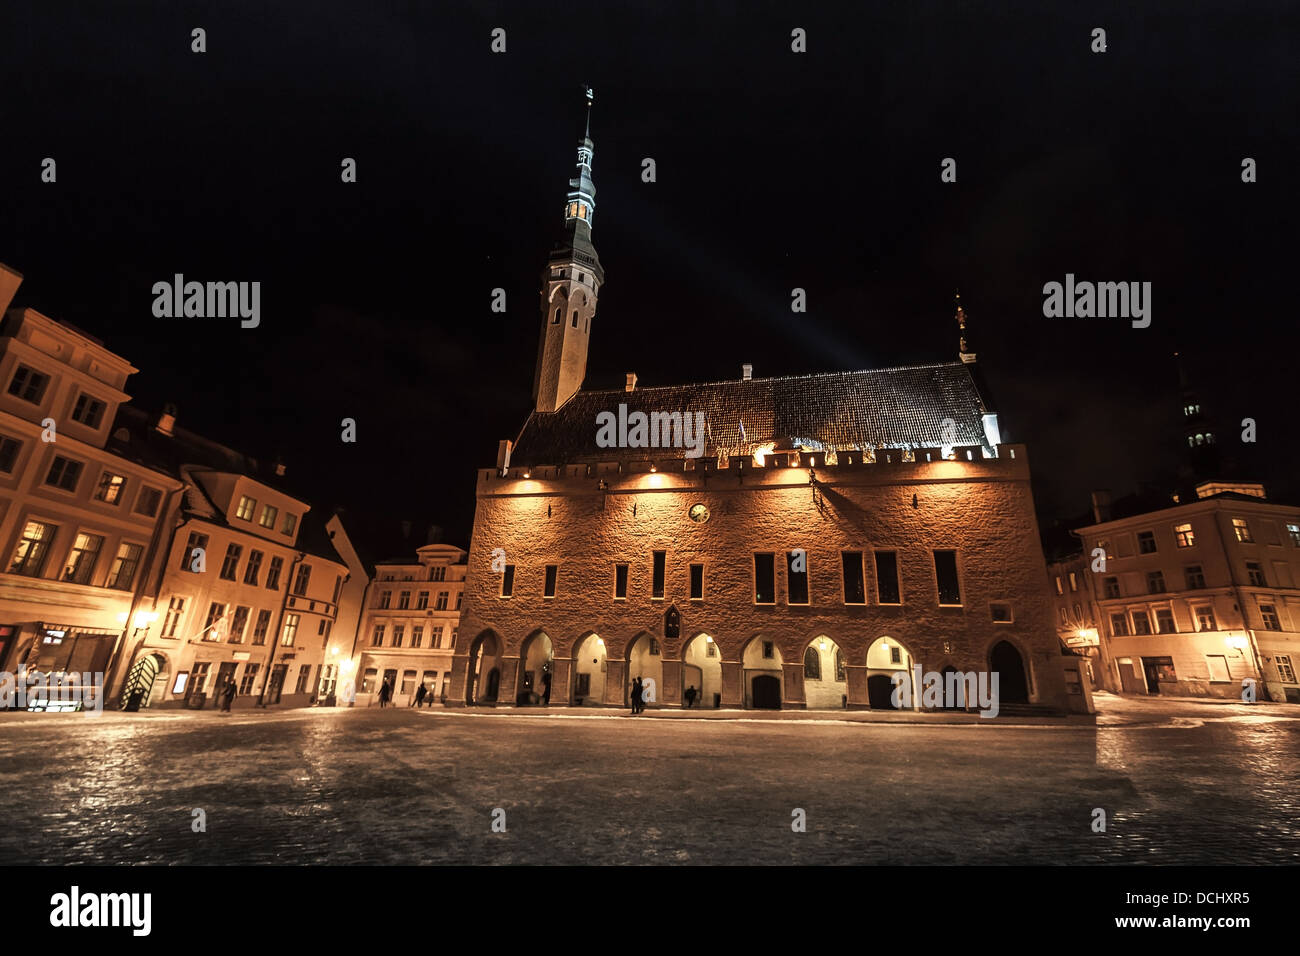 Accesa al municipio di notte d'inverno. La città vecchia di Tallinn, Estonia Foto Stock